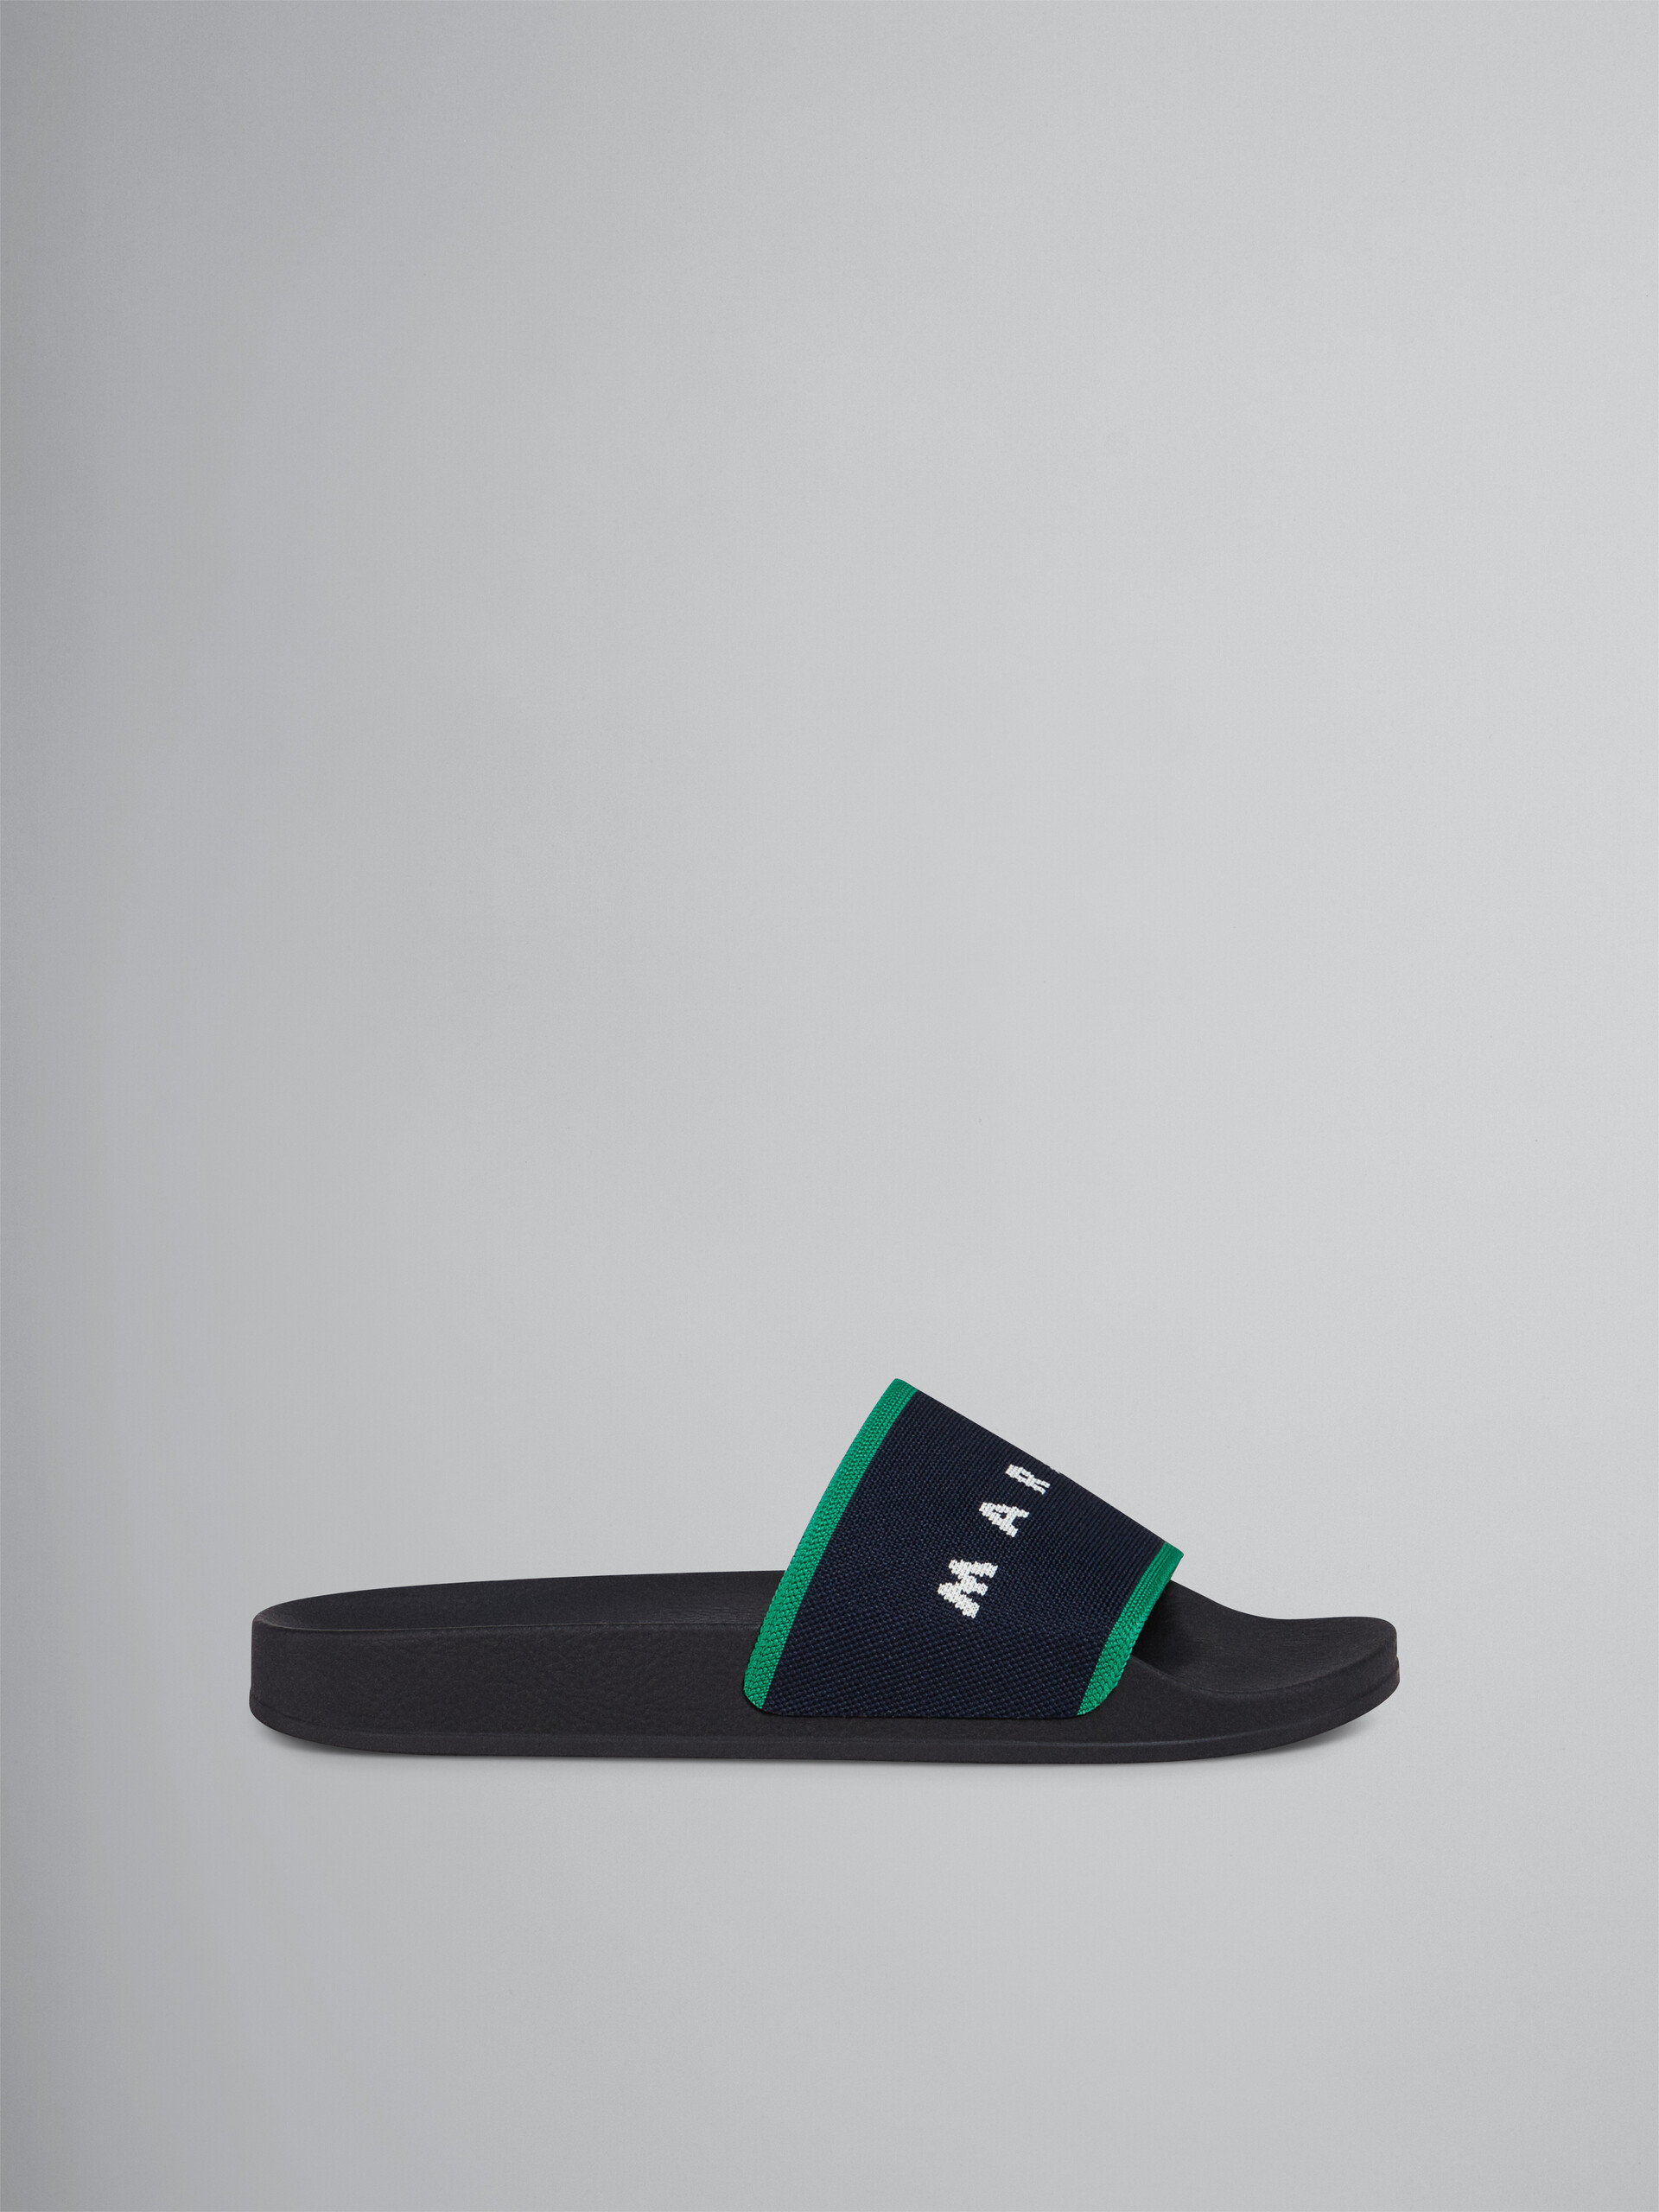 Blueblack and green stretch logo jacquard slide - Sandals - Image 1